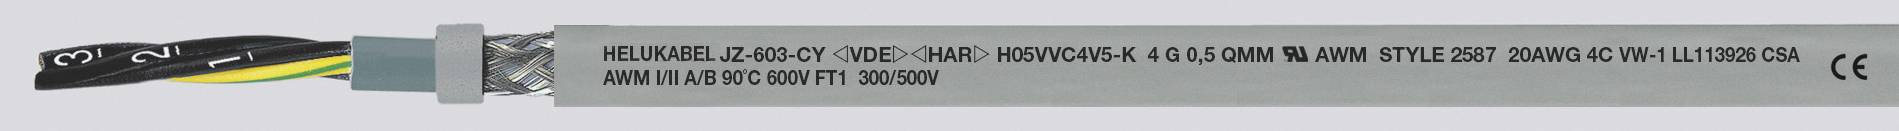 HELUKABEL JZ-603-CY Steuerleitung 3 G 1.50 mm² Grau 83753-1000 1000 m